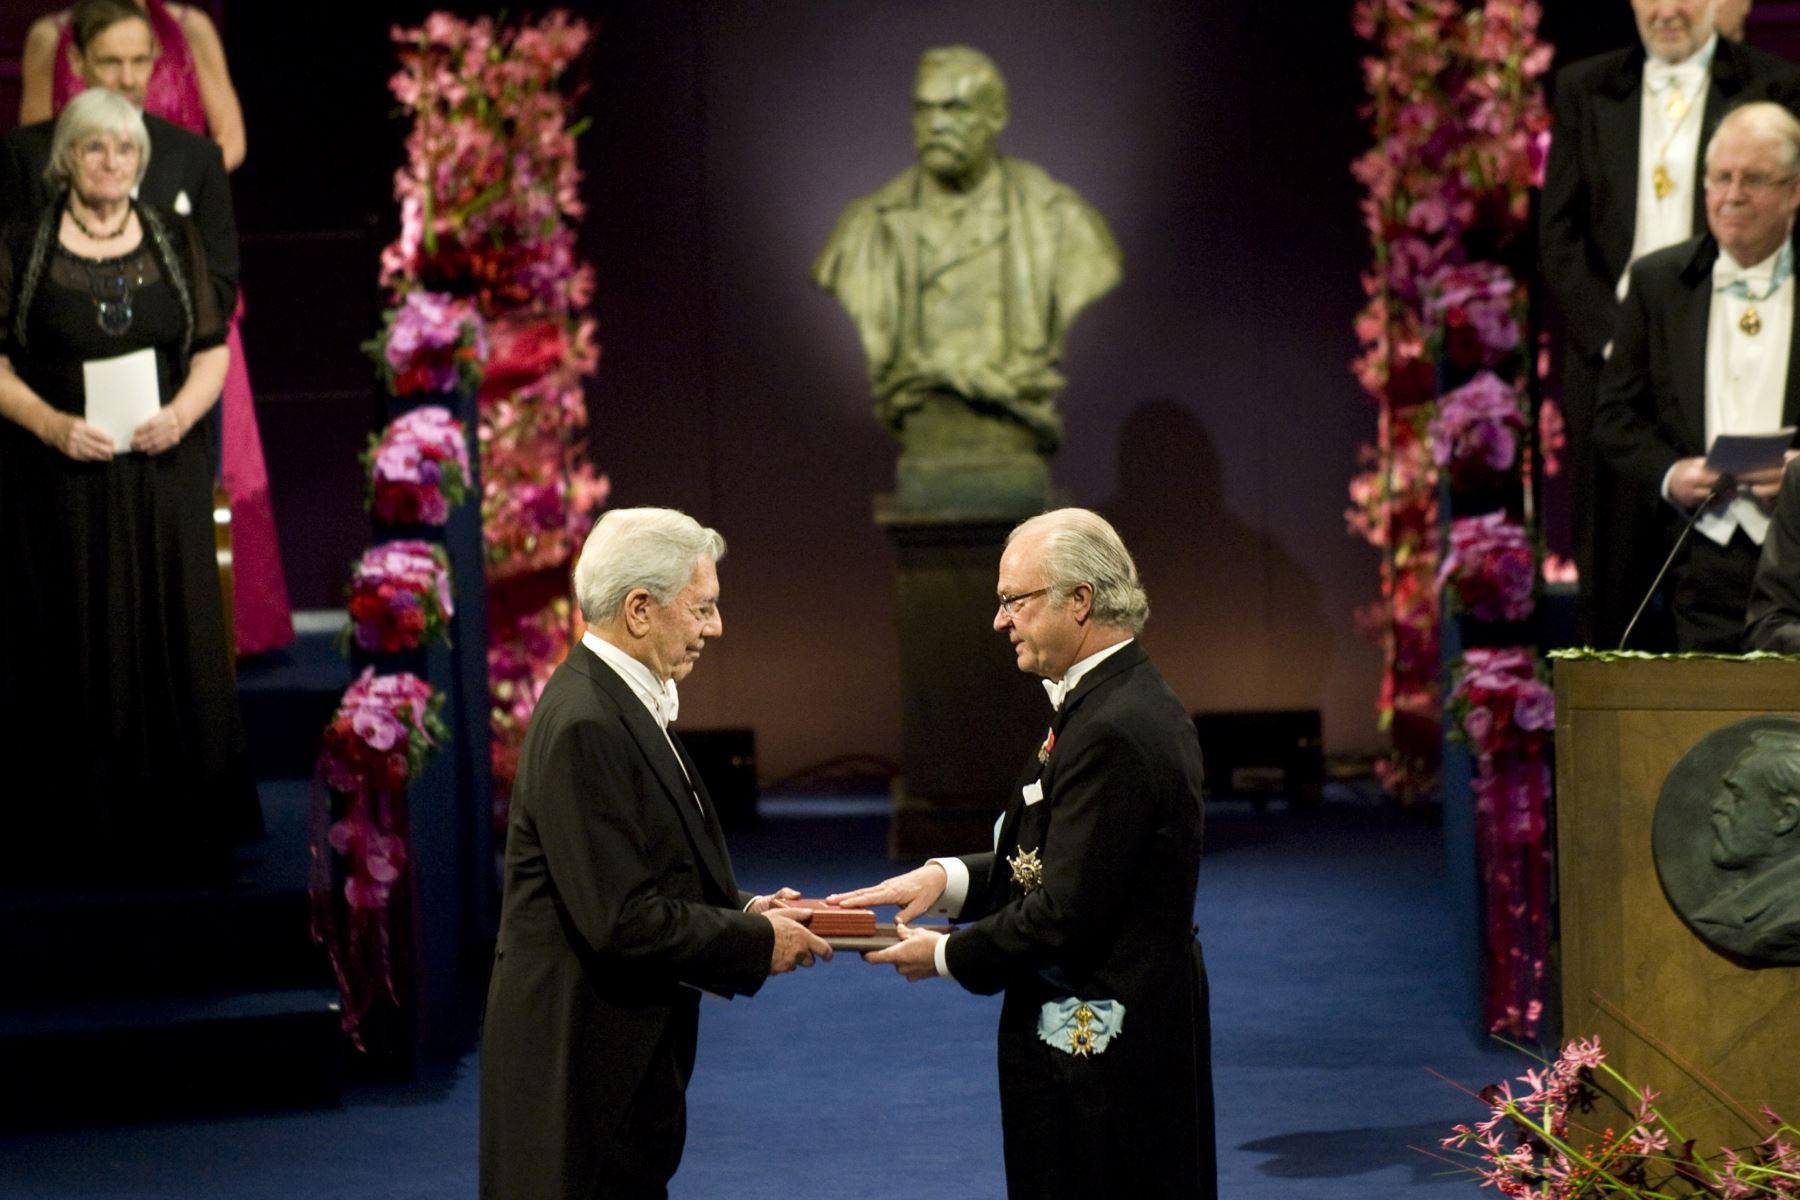 Fotografía tomada el 10 de diciembre de 2010. El escritor peruano Mario Vargas Llosa, recibe el Premio Nobel de Literatura del rey sueco Carl XVI Gustaf, en la Sala de Conciertos de Estocolmo. Foto: AFP